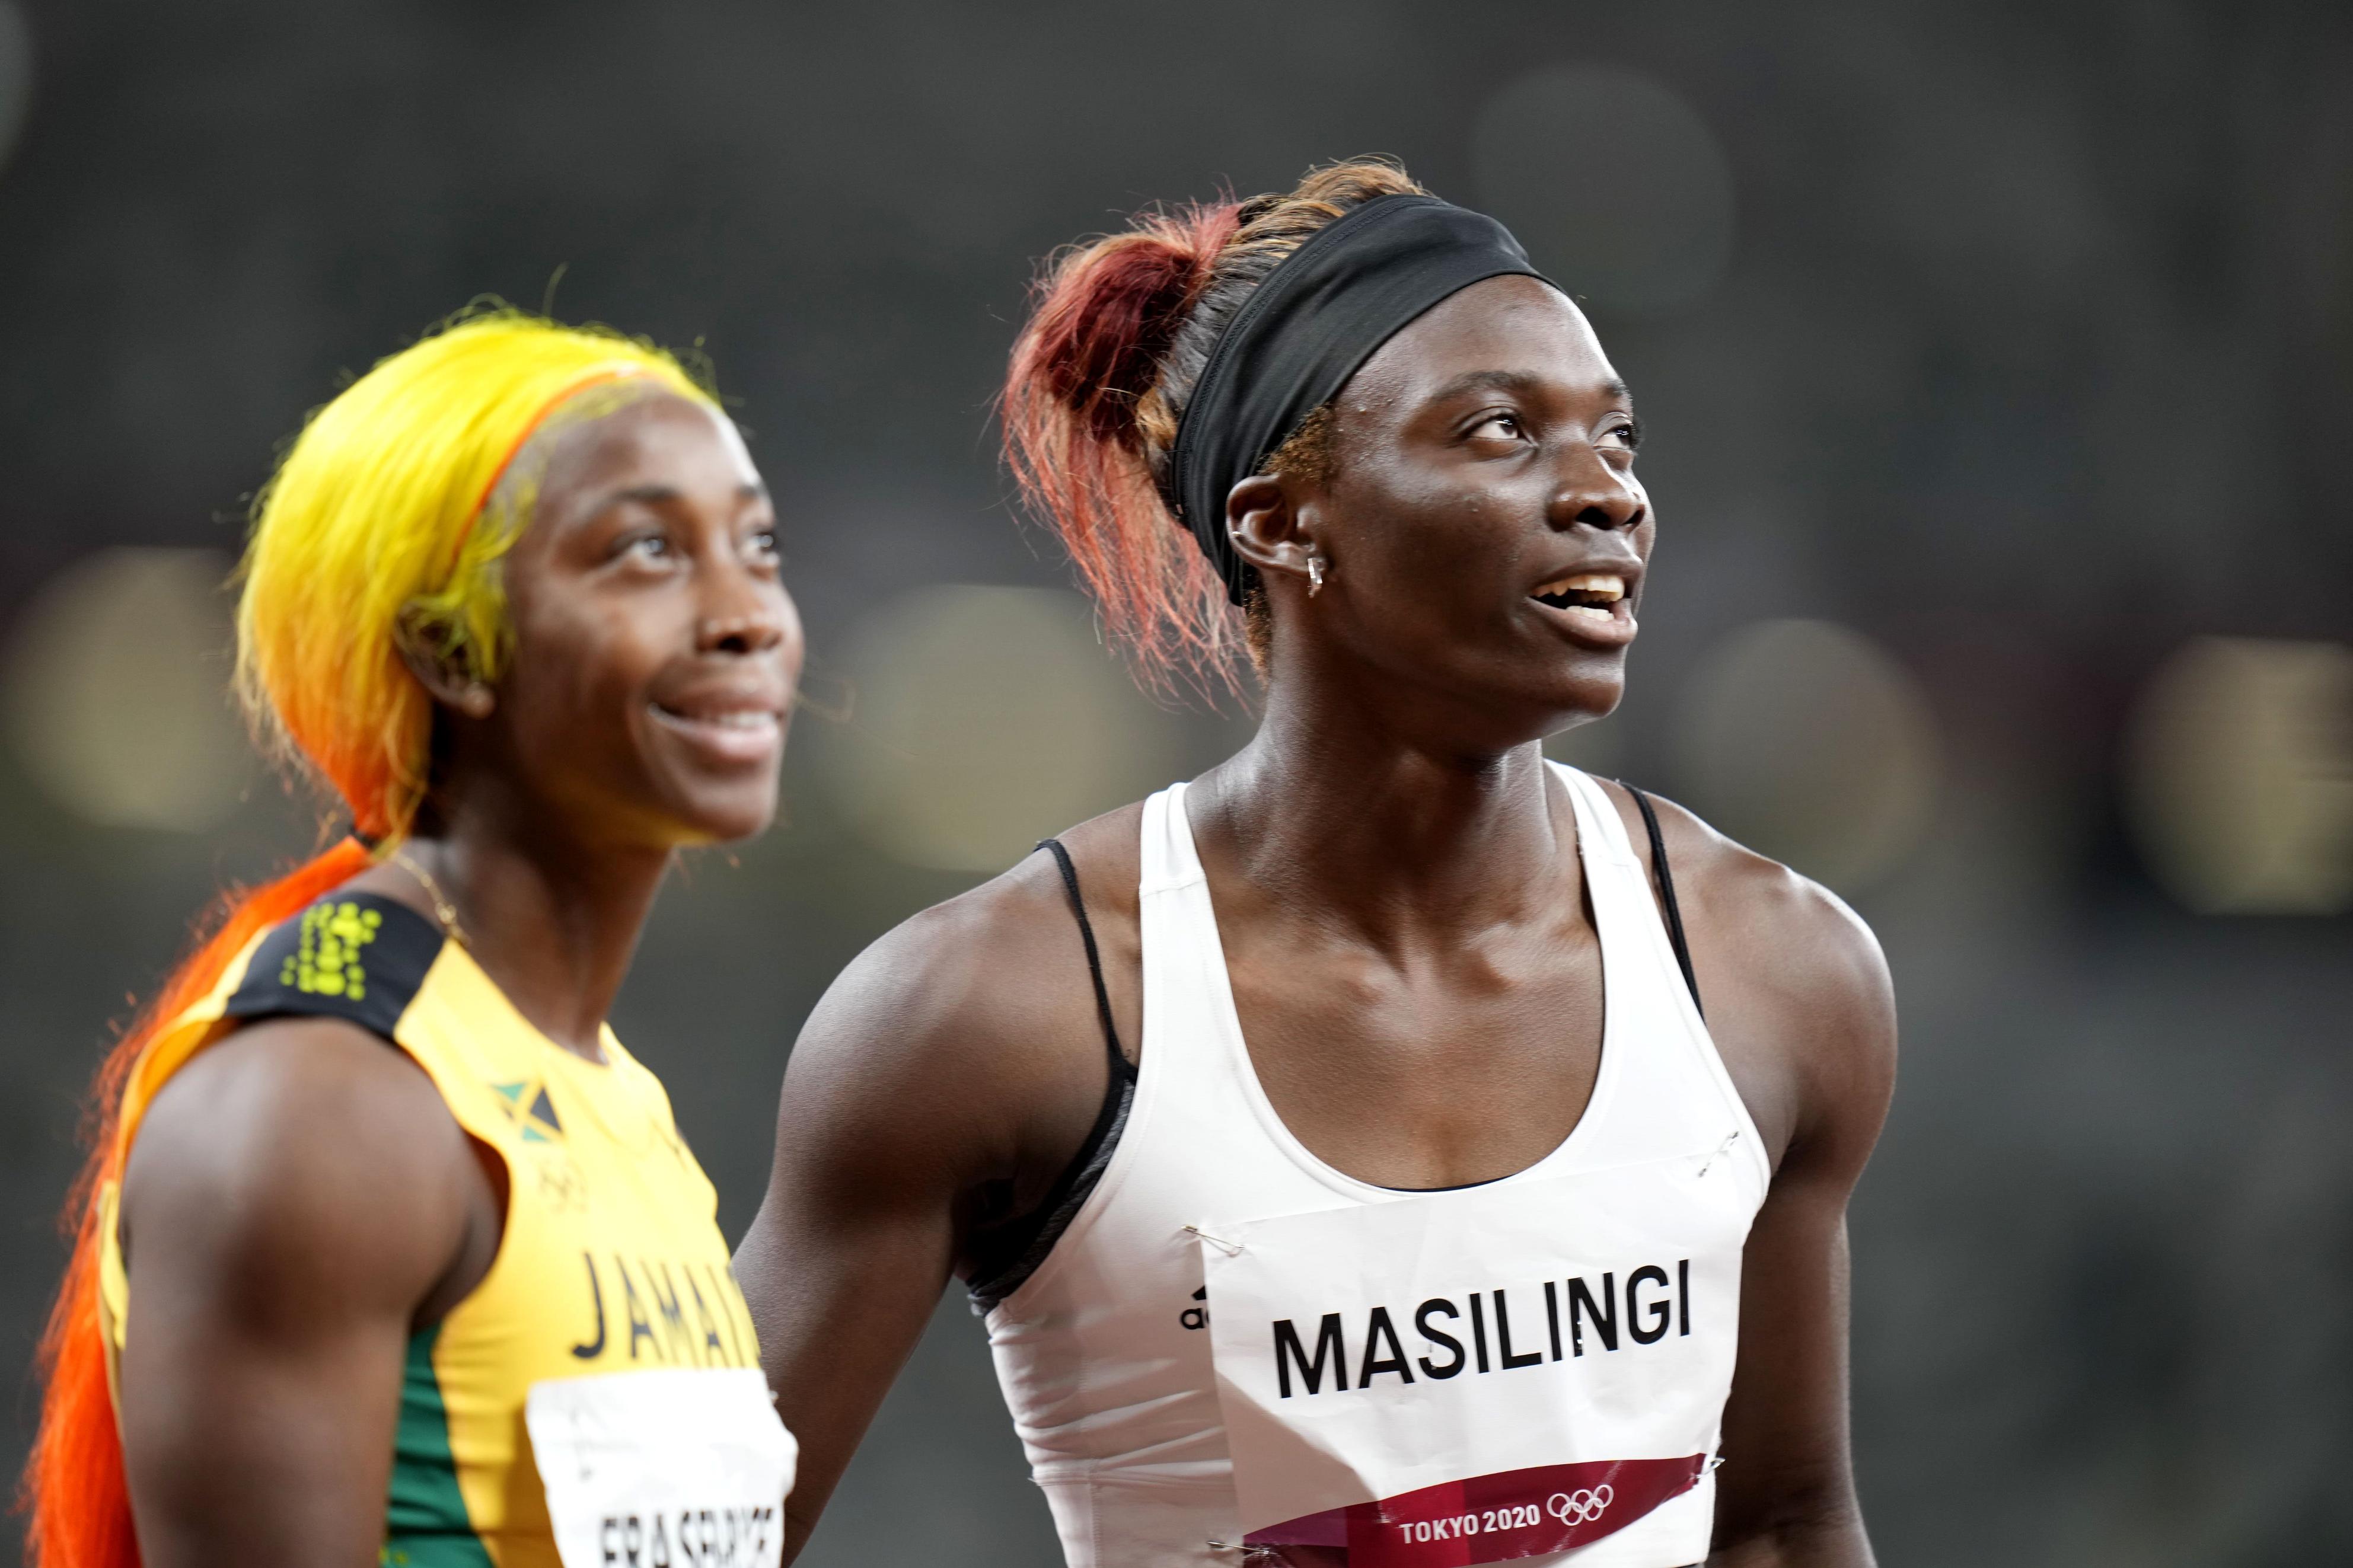 ナミビア女子２選手 ホルモン値騒動乗り越え２００メートル決勝進出 陸上 サンスポ